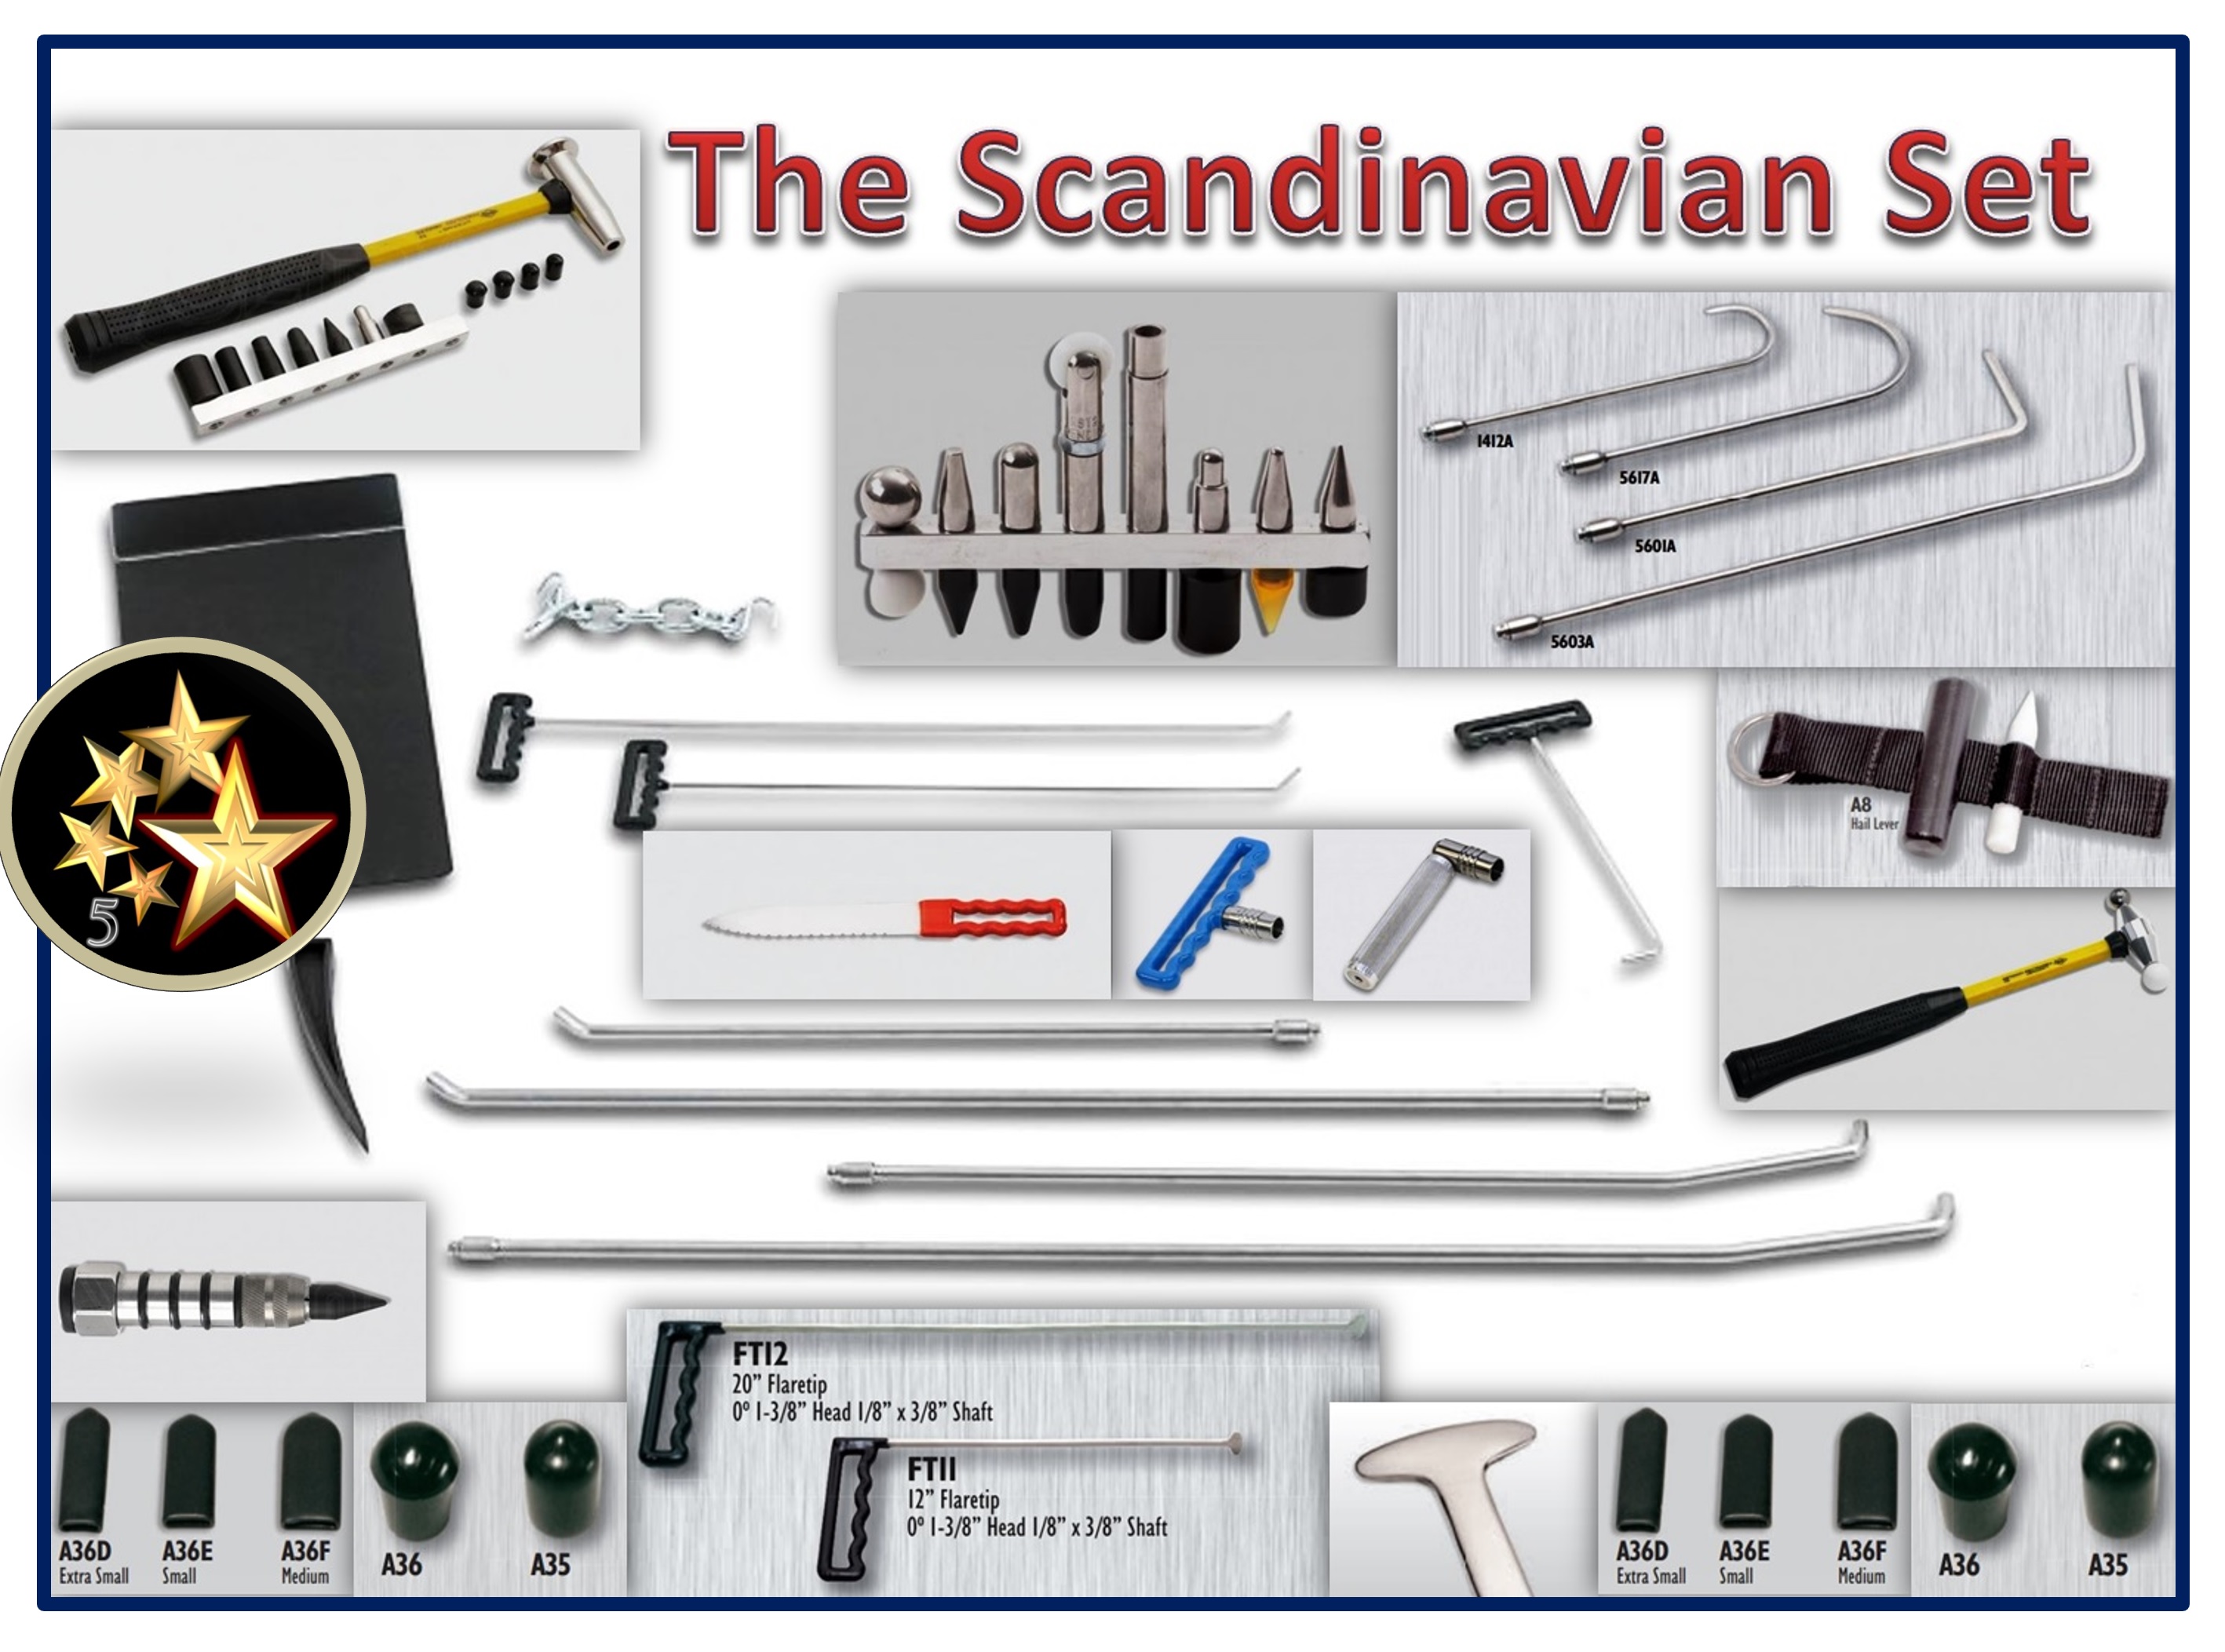 TheScandinavian